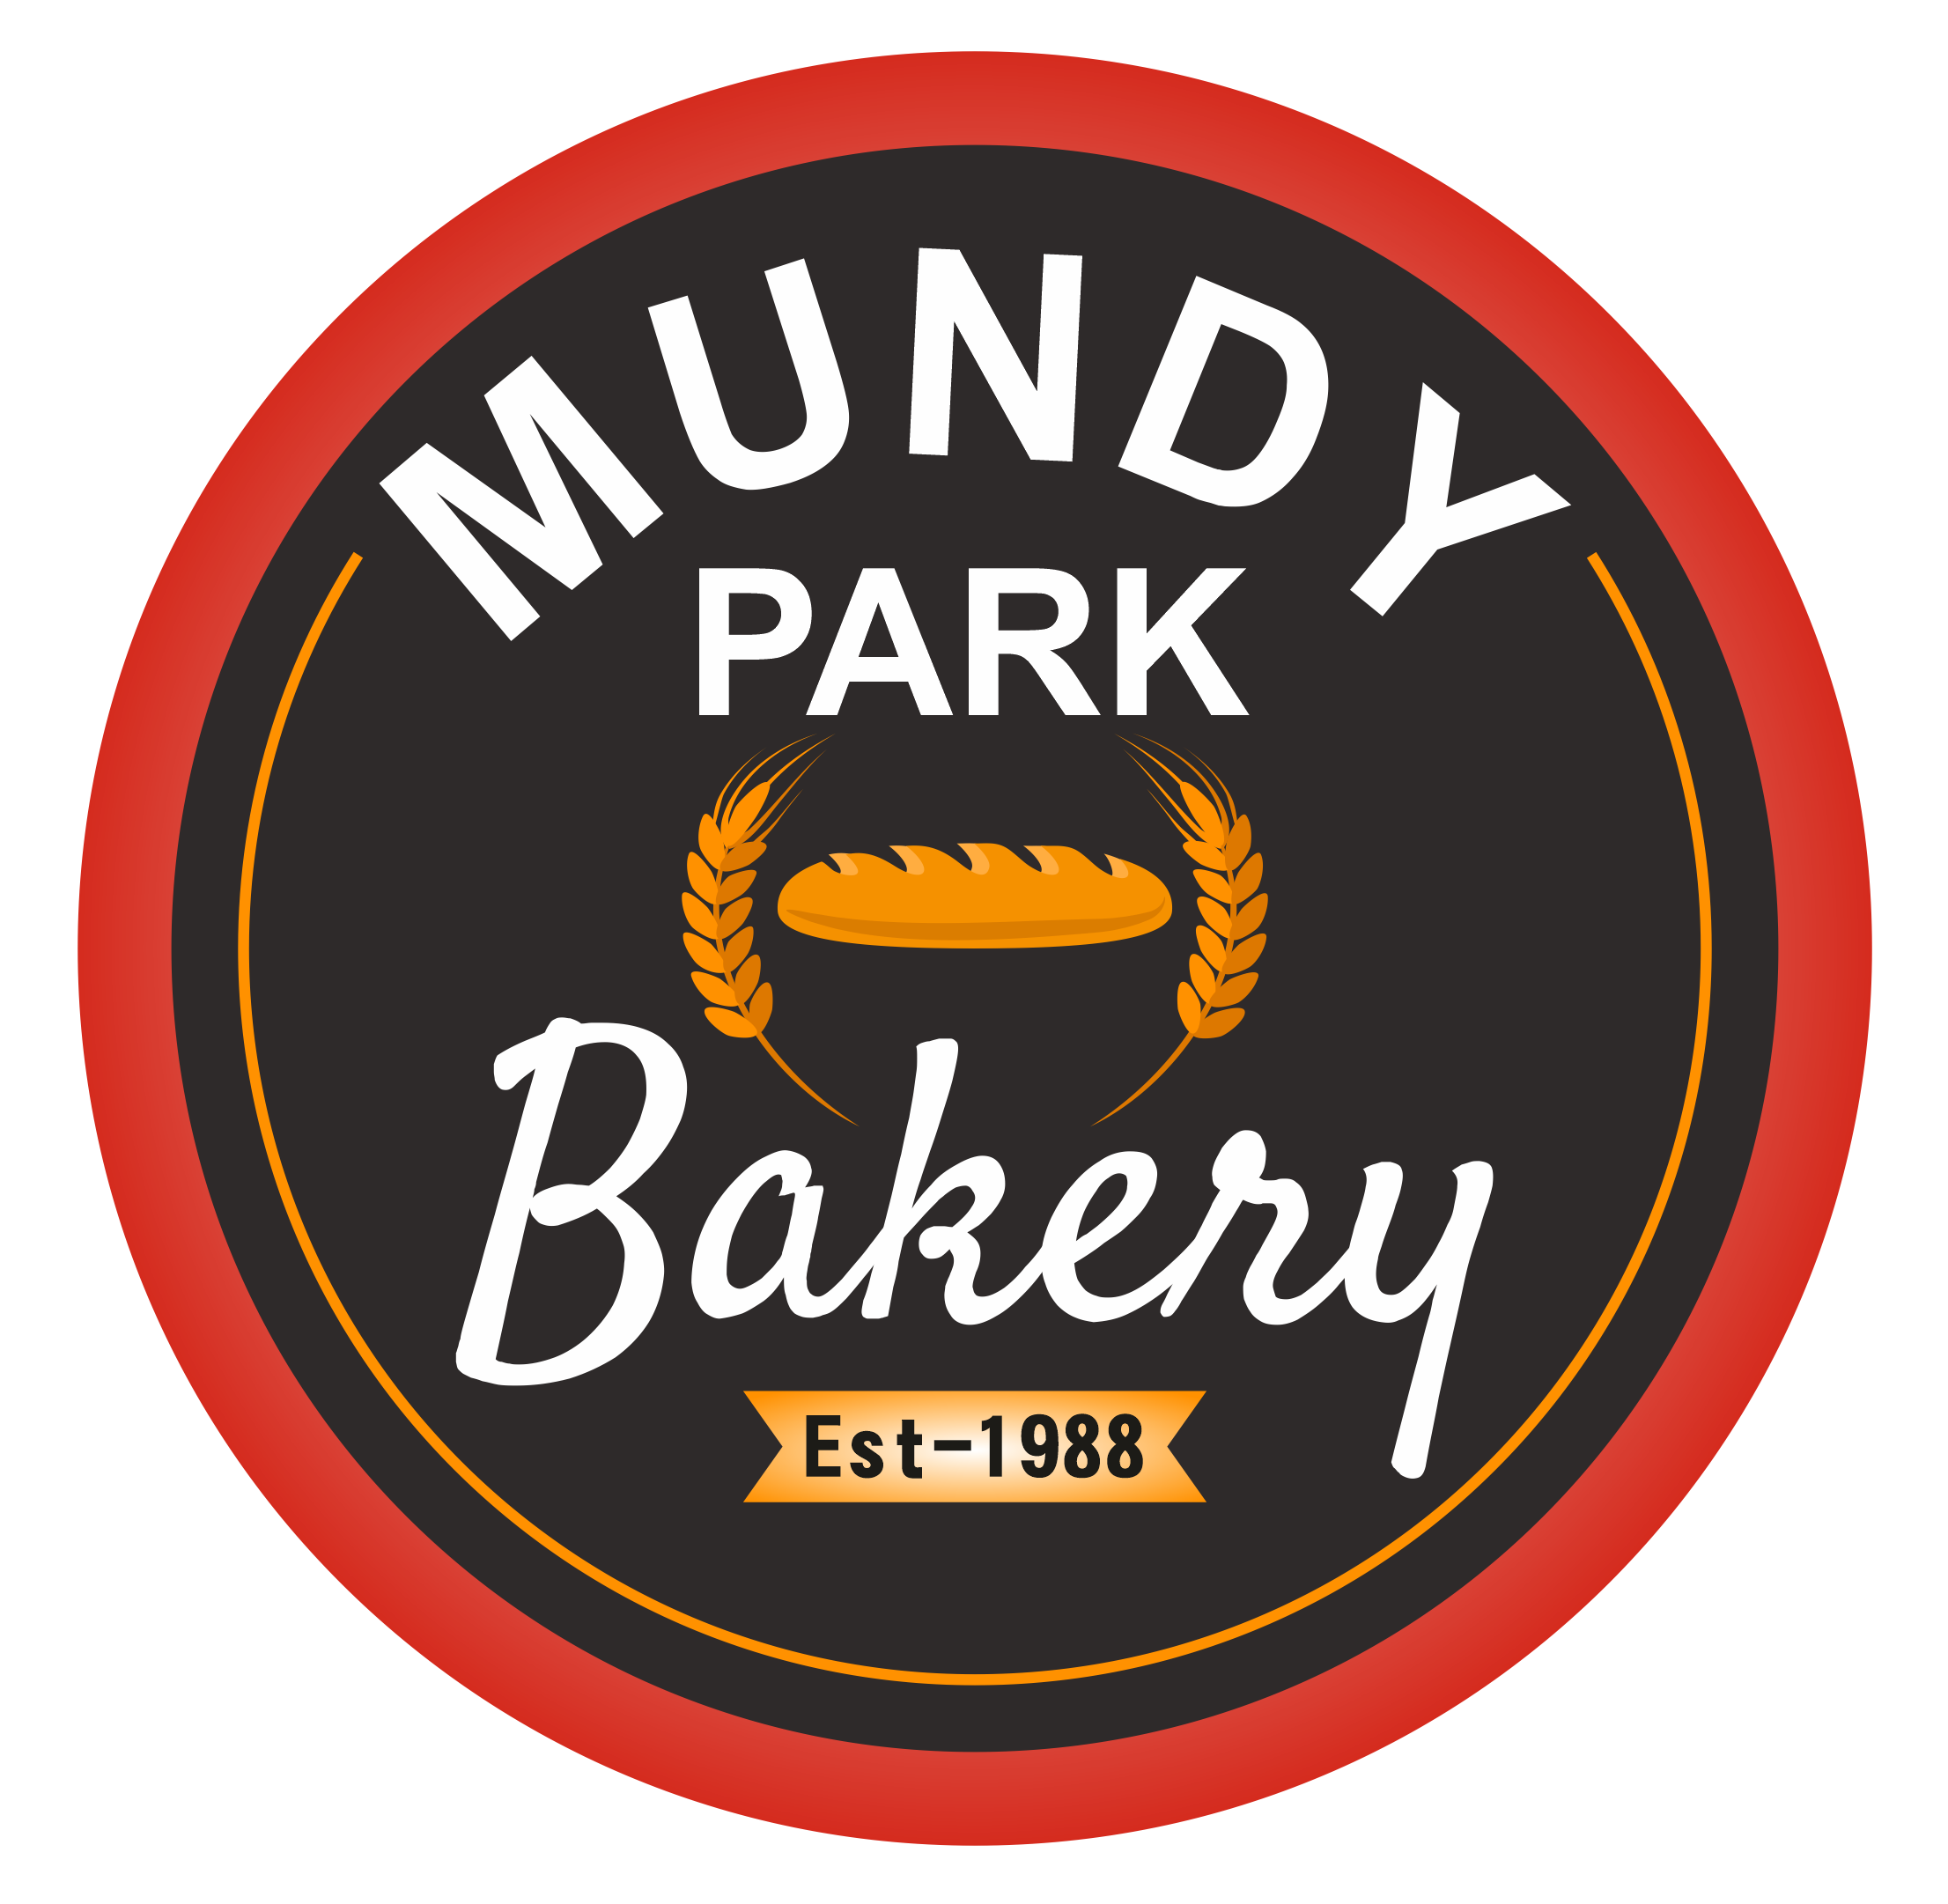 Mundy Park Bakery-Since 1988